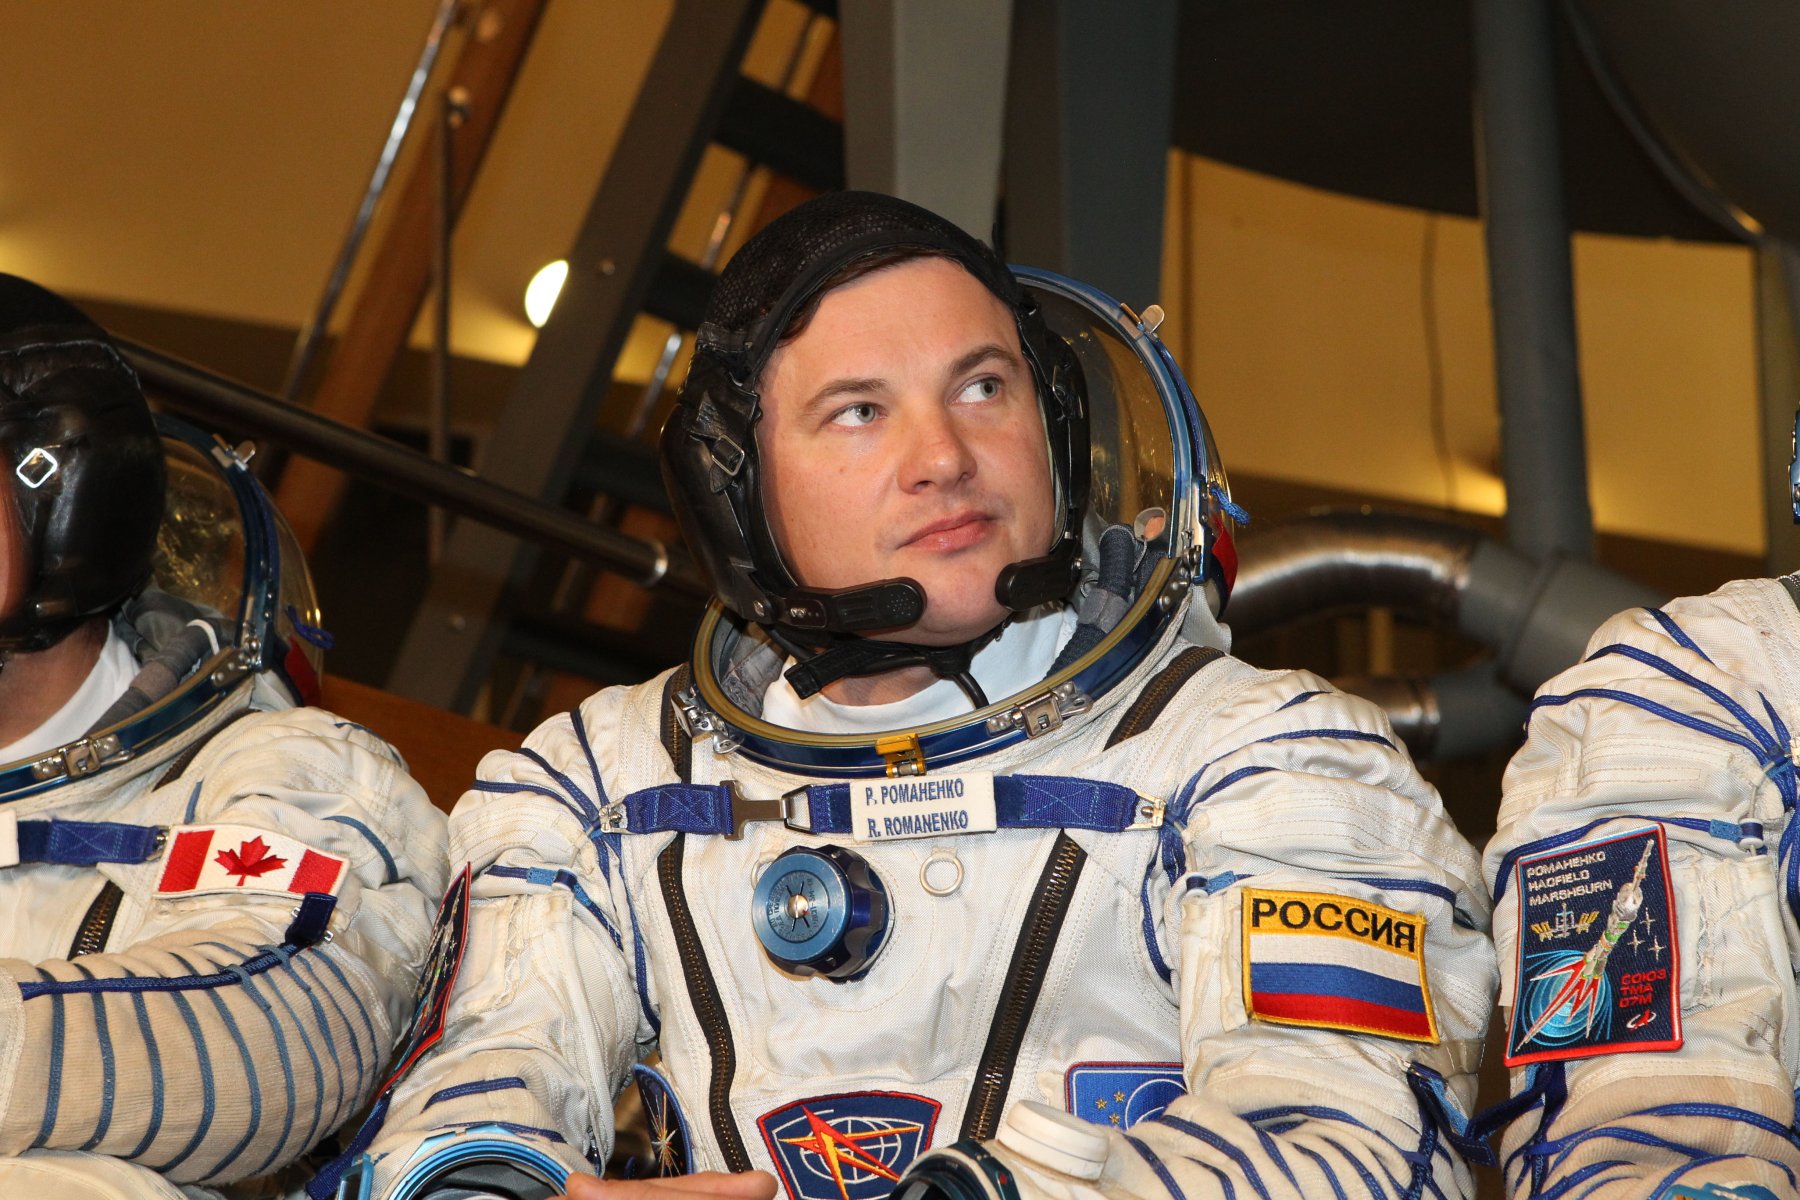 Космонавт Роман Романенко рассказал о том, как отдыхают на МКС